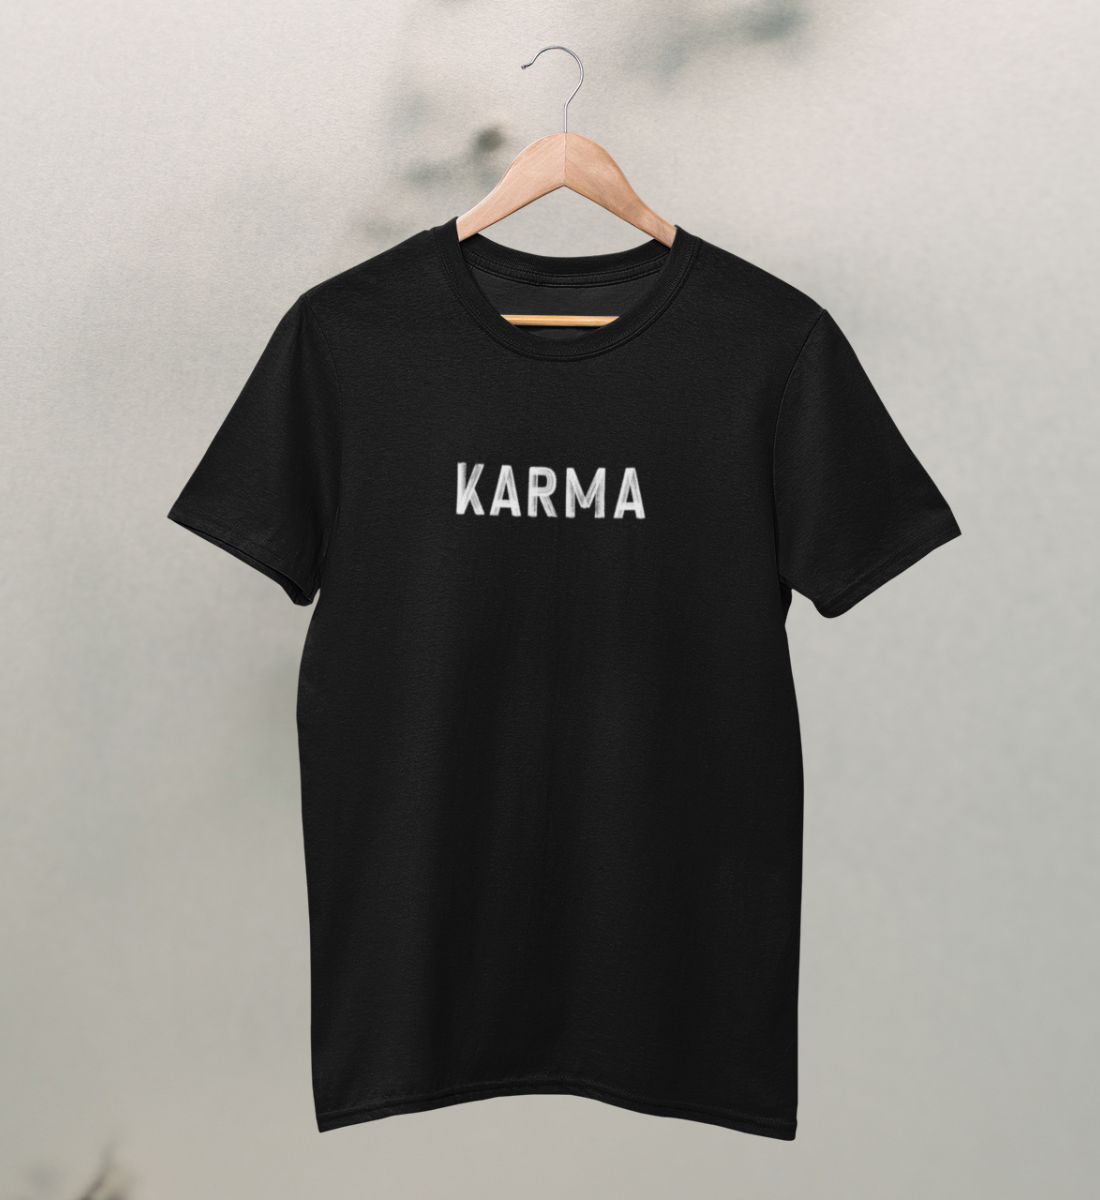 karma l t-shirt kinder bio-baumwolle schwarz l yoga mode kinder l bio yoga kleidung l ökologische mode l ethischer konsum dank natürlichen materialien